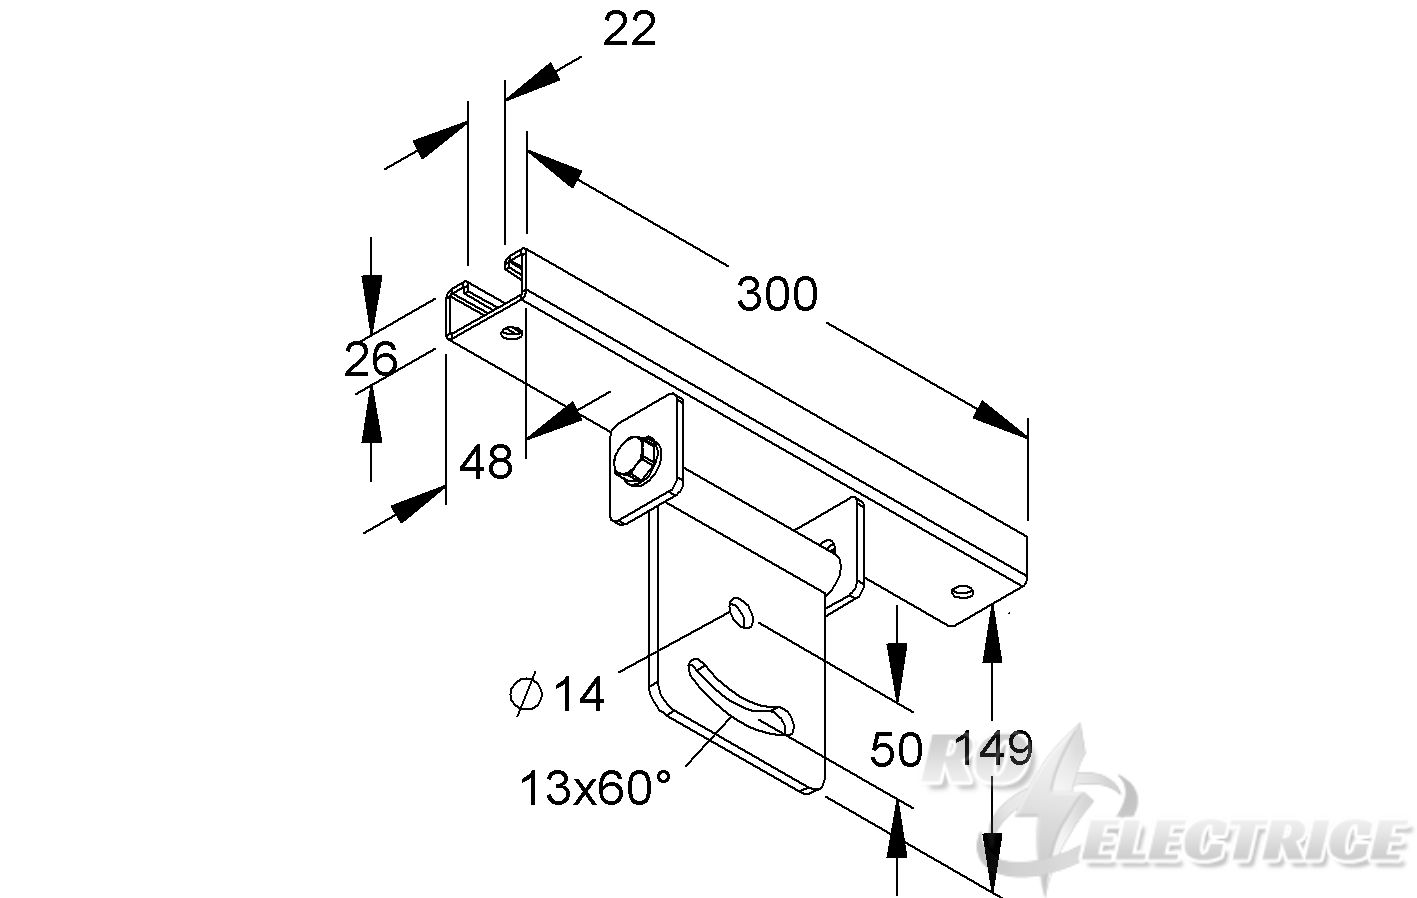 Klemmkopfplatte für Profil U 50, schwenkb., parallel zum Trägerprofil, Stahl, feuerverzinkt DIN EN ISO 1461, inkl. Zubeh